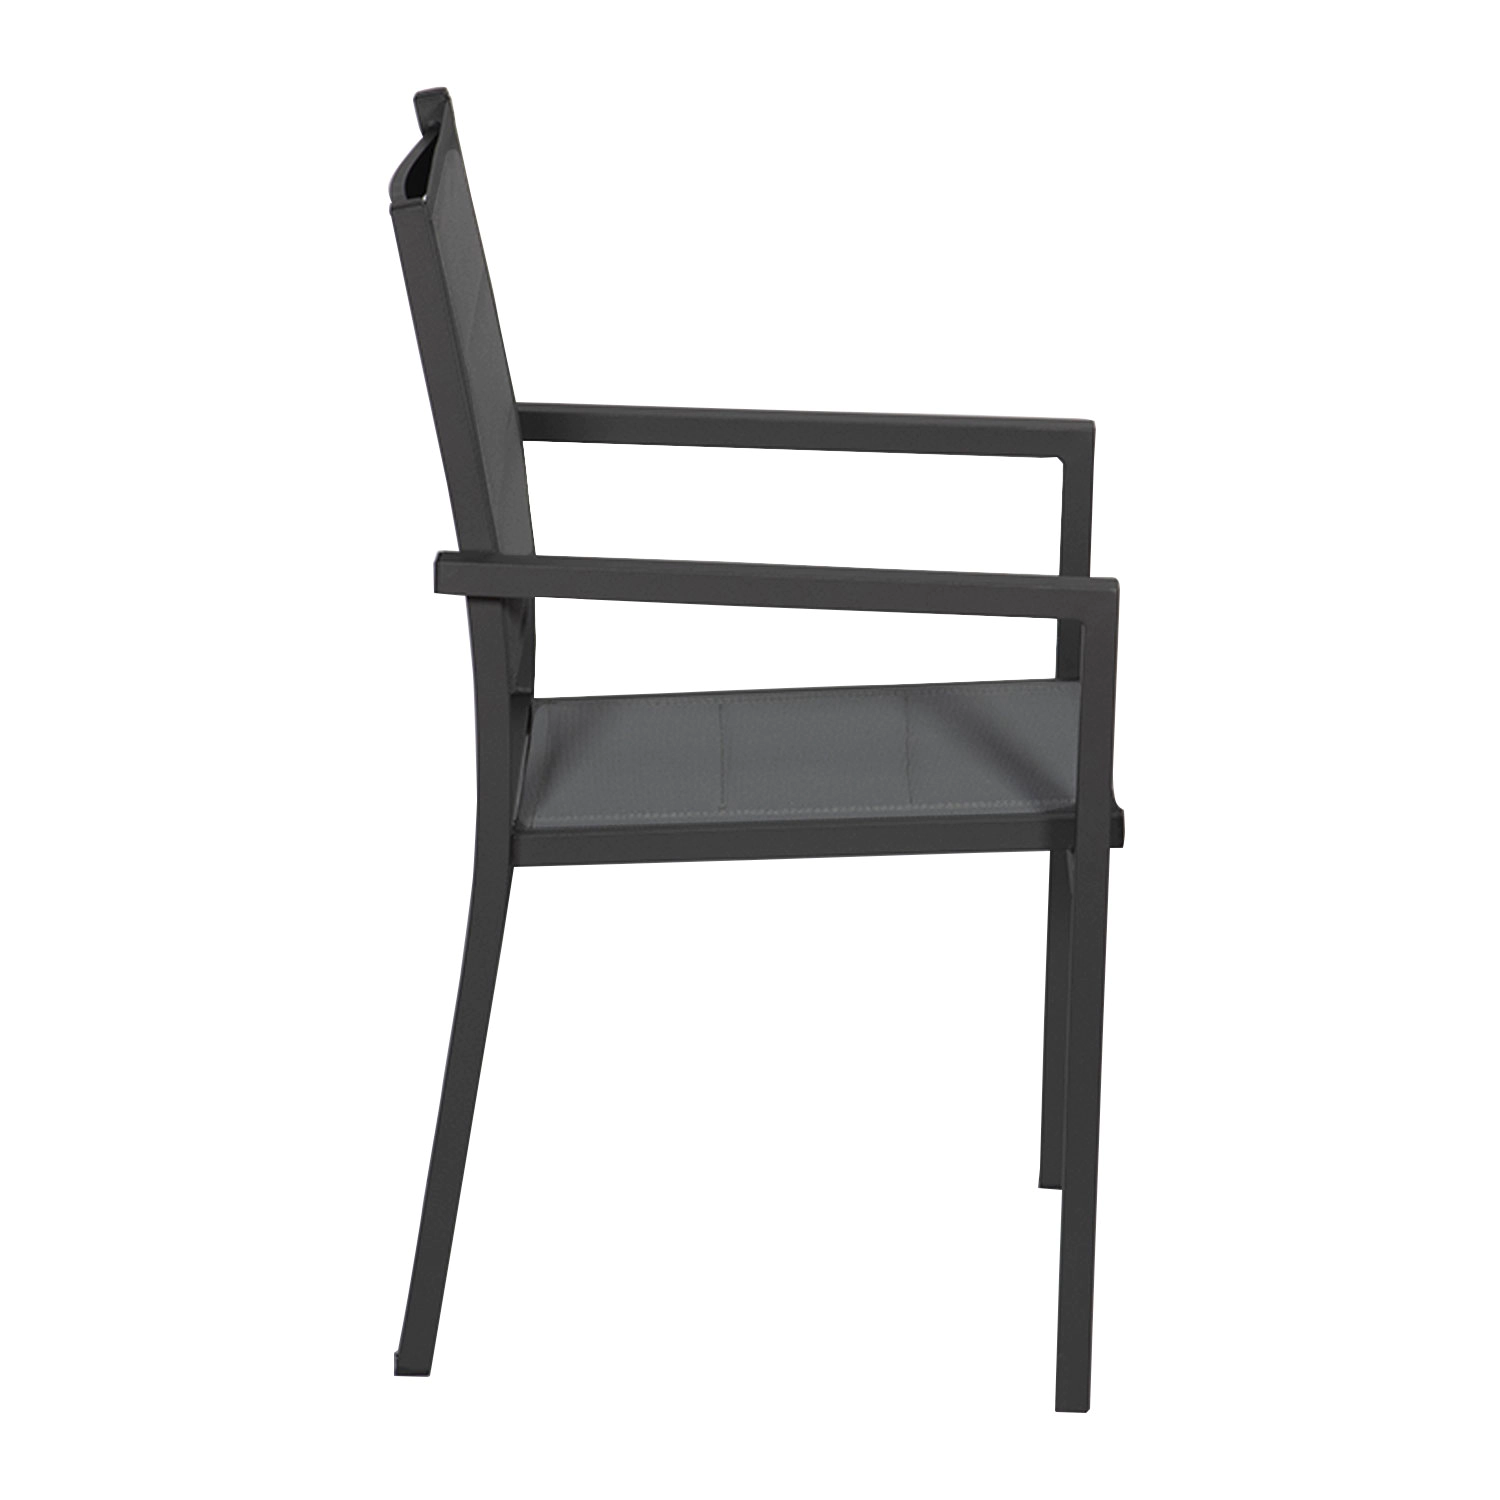 Conjunto de 4 cadeiras estofadas em alumínio antracite - textileno cinzento